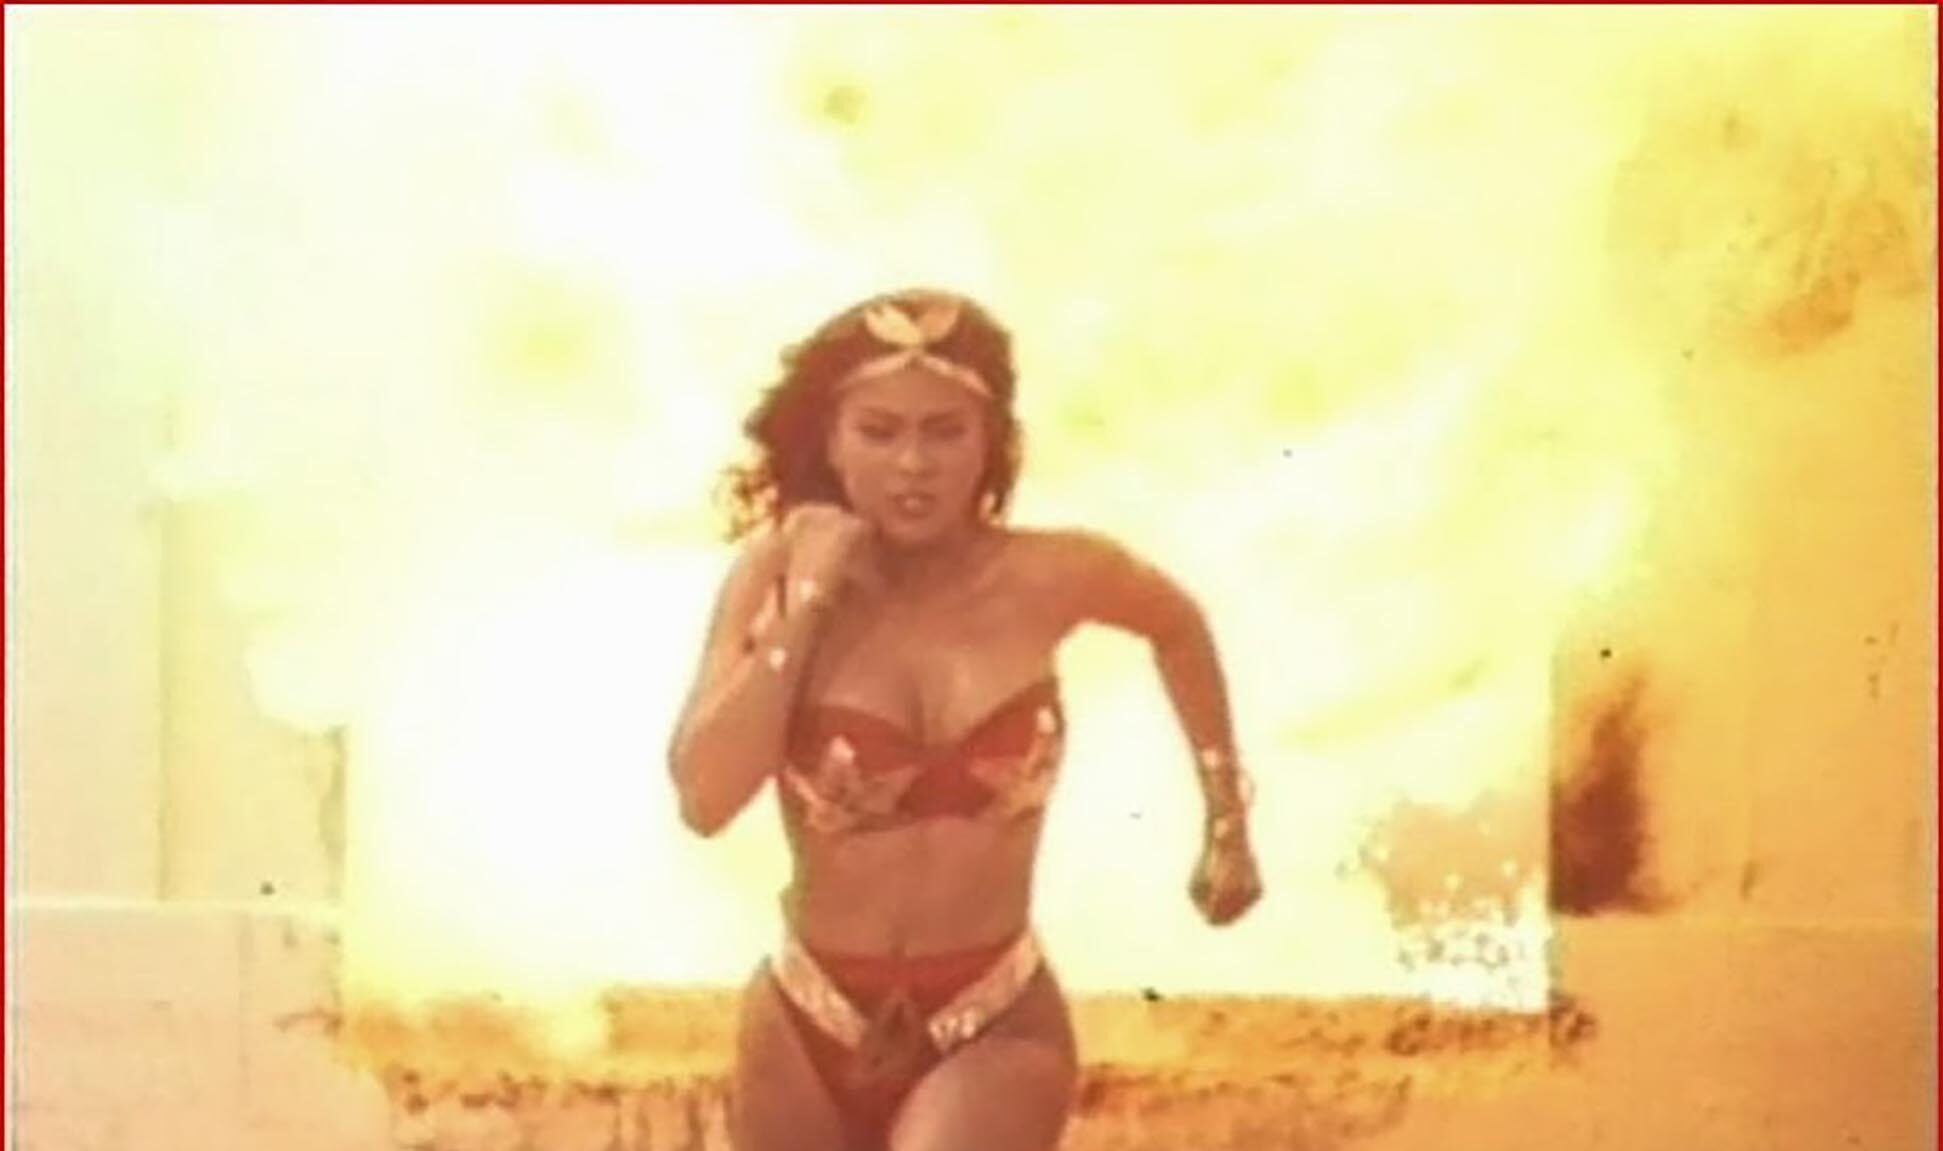 El próximo día 19 se proyecta la Wonder Woman filipina